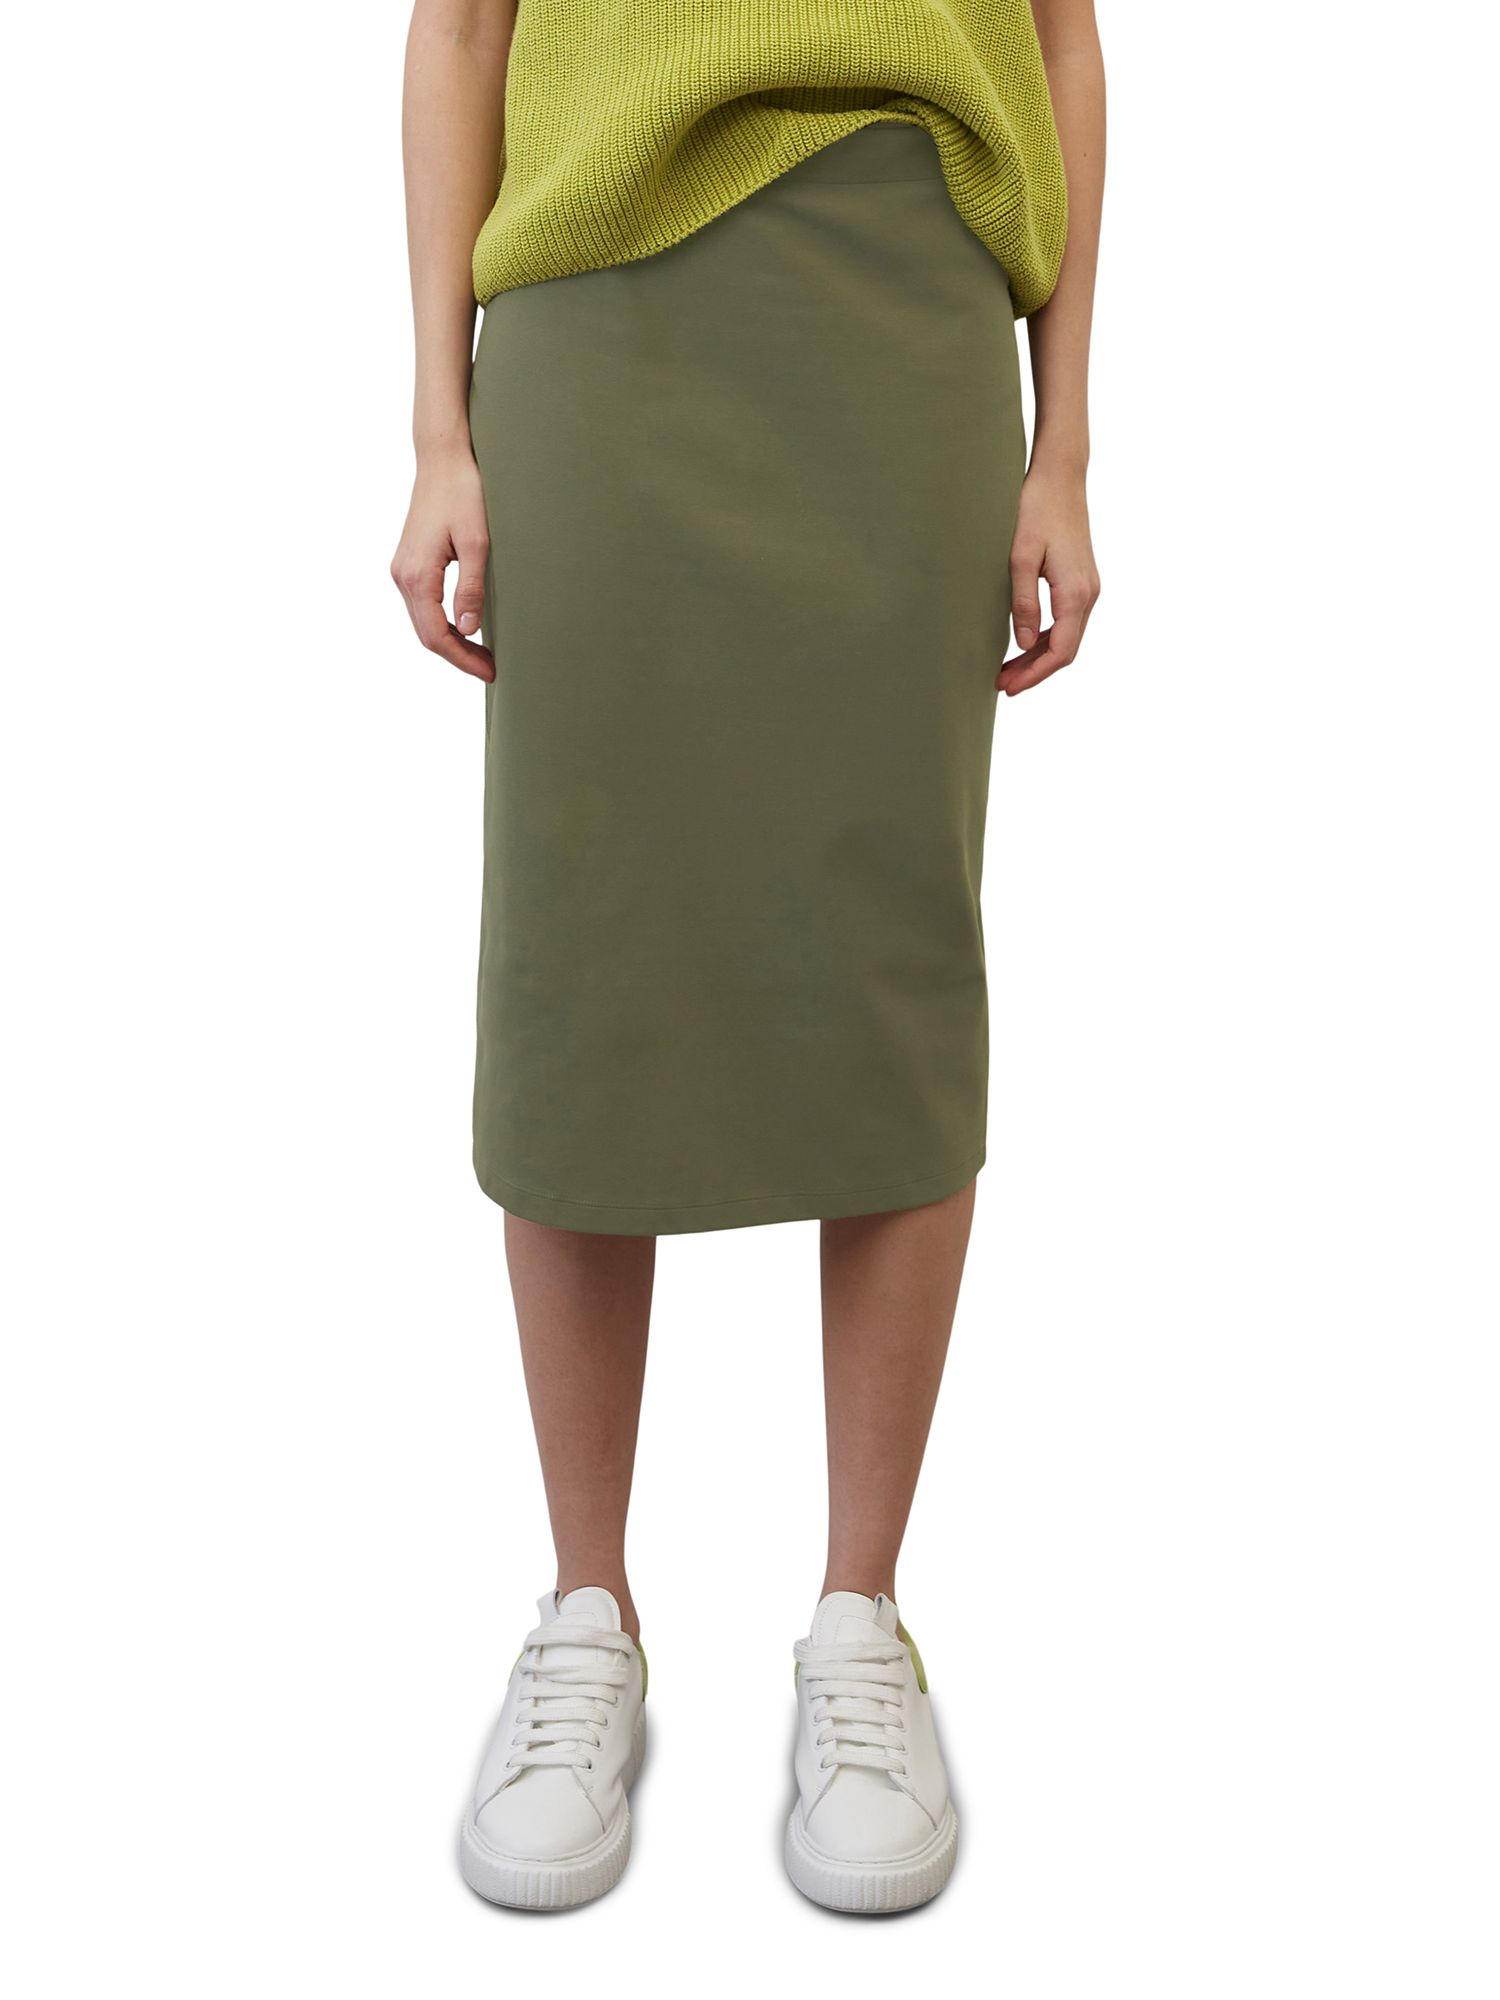 Skirt For Smart Casual Attire For Women | John Lewis & Partners